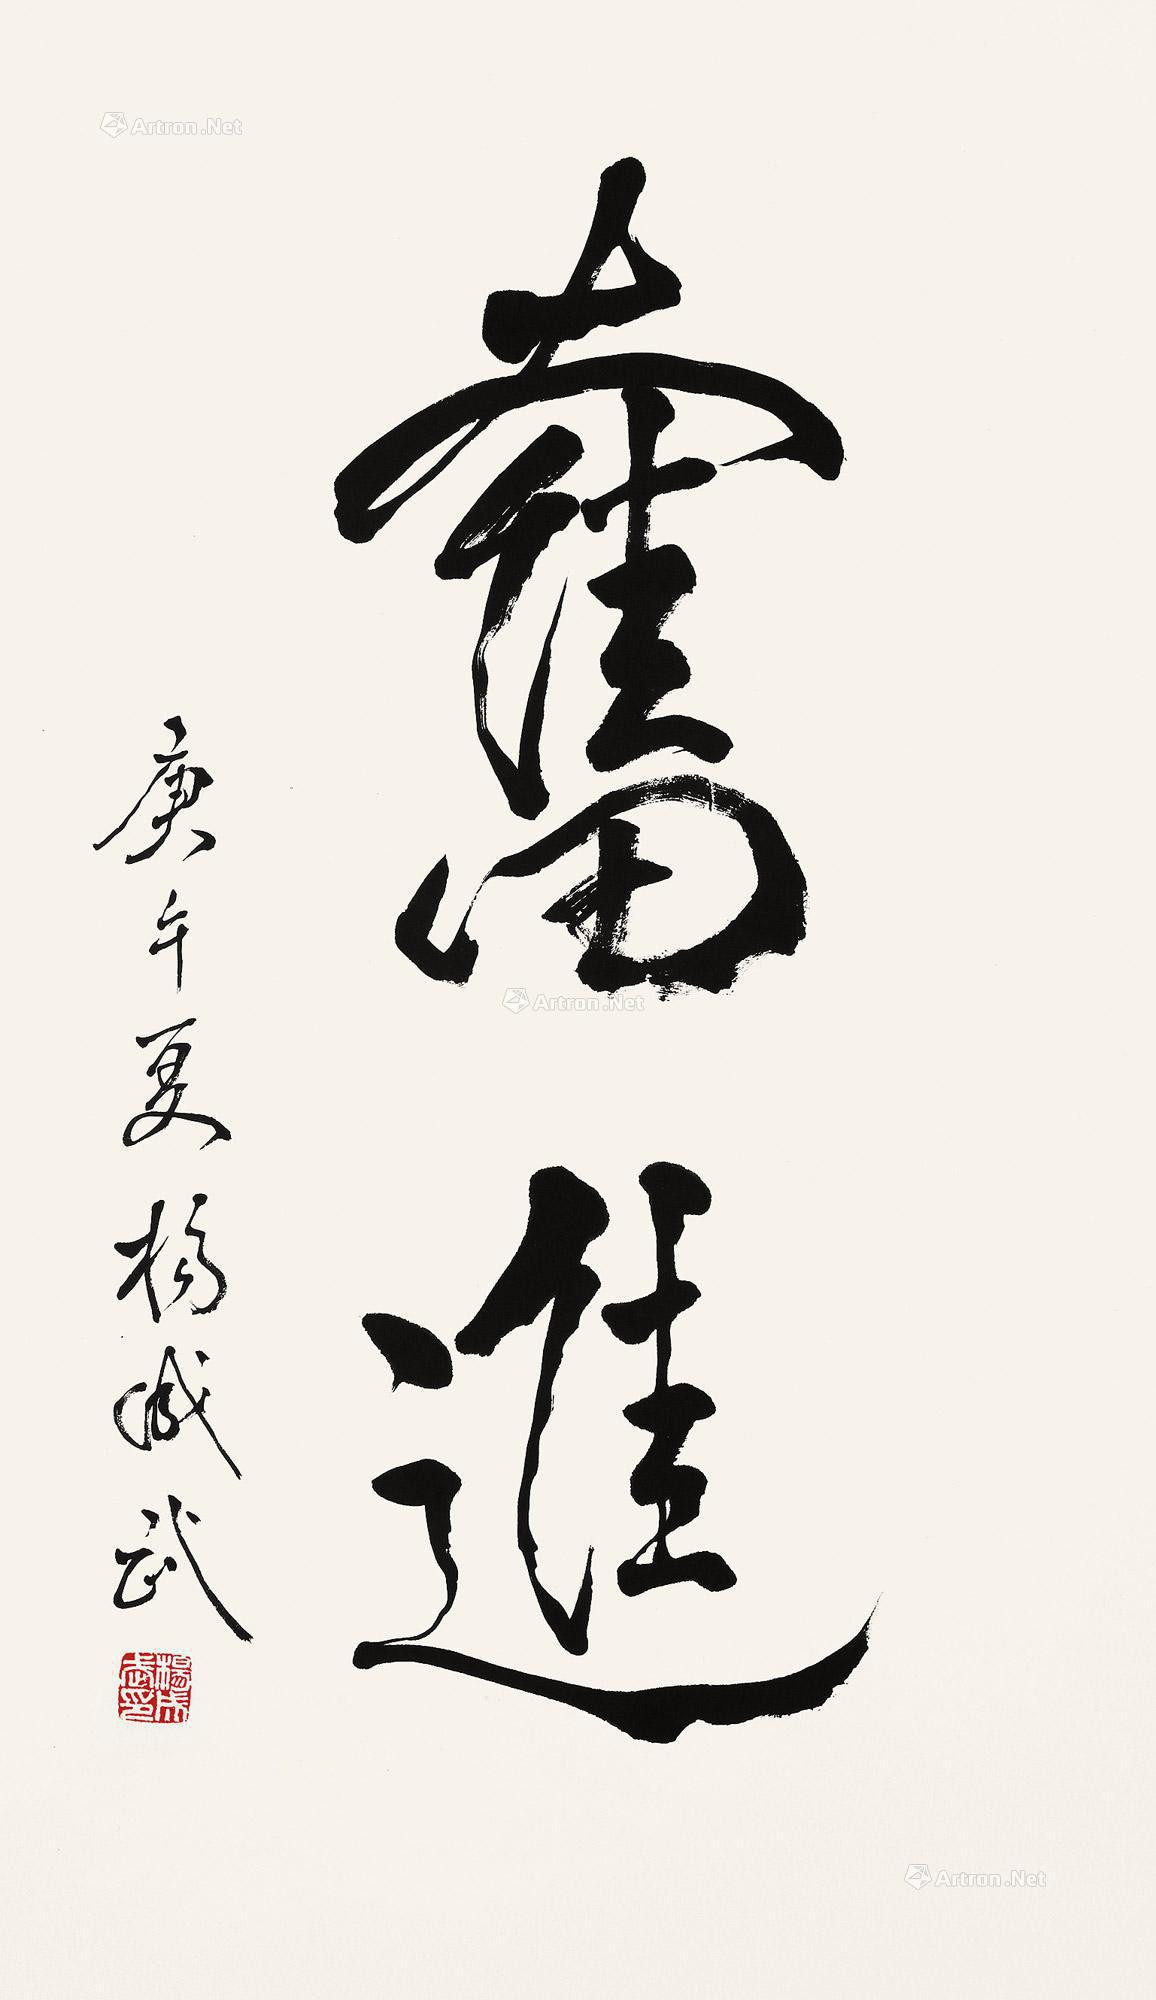 Calligraphy “Fen Jin” by Yang Chengwu